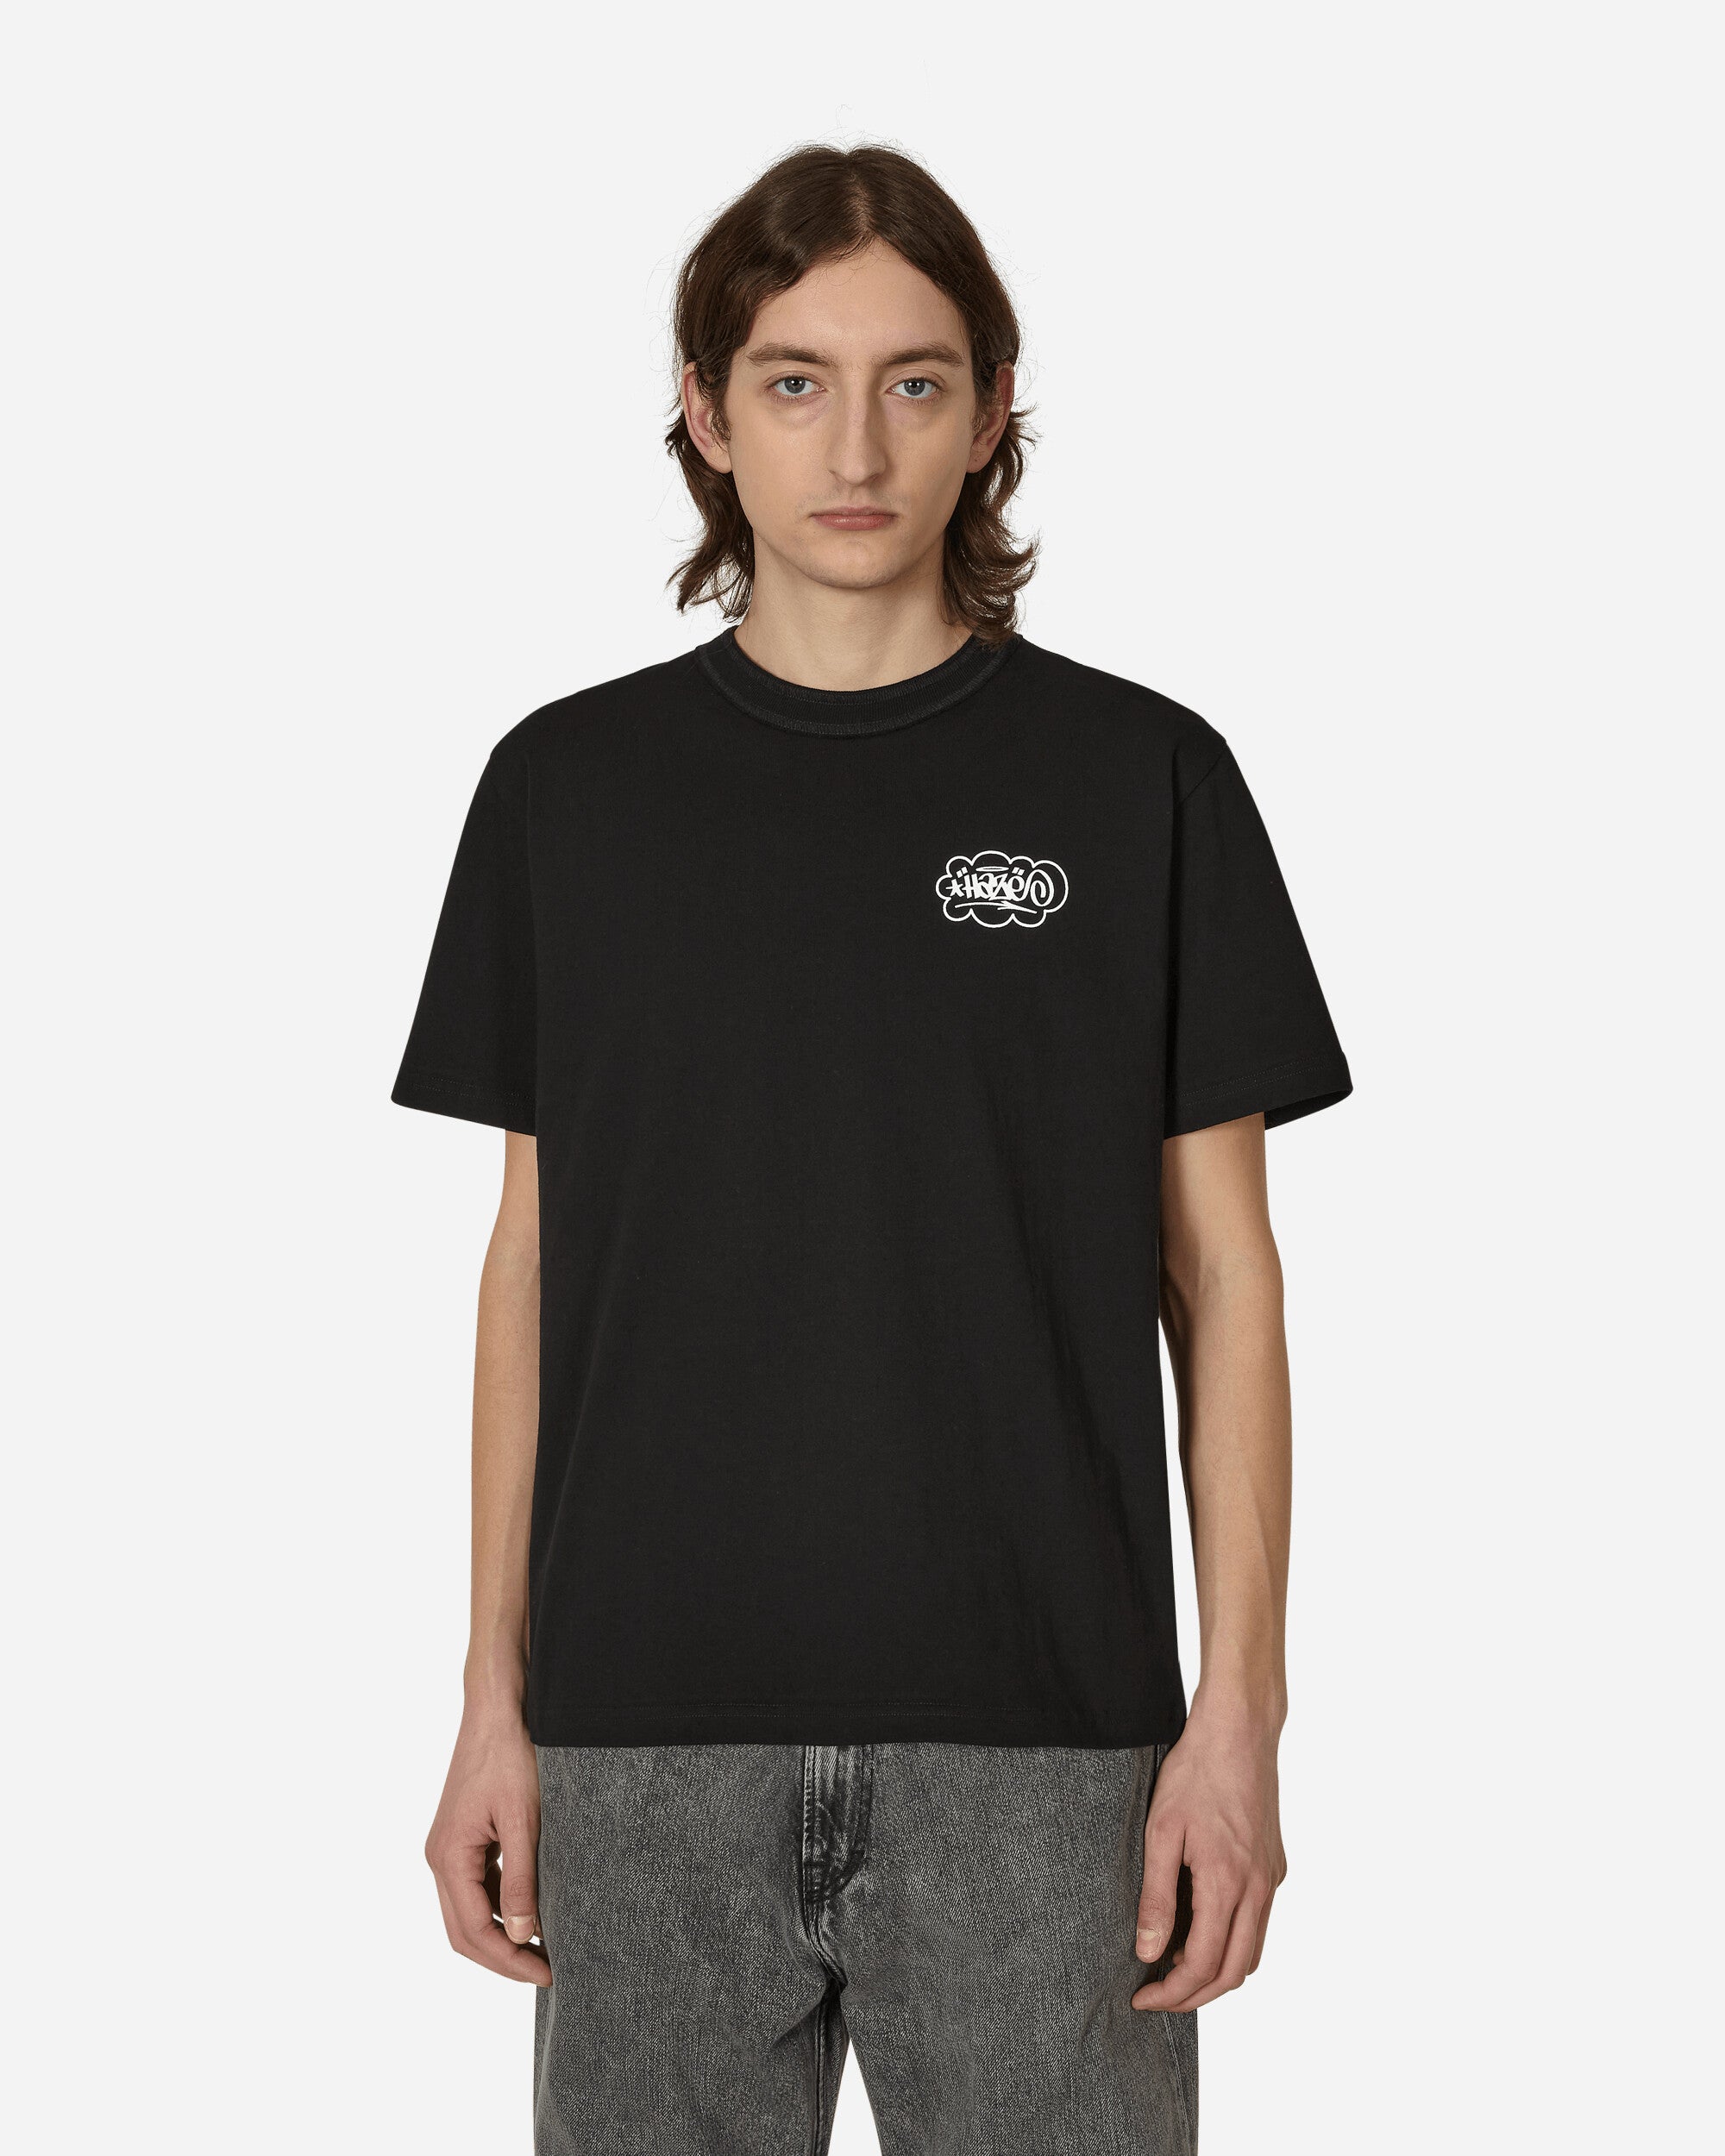 Eric Haze T-Shirt Black